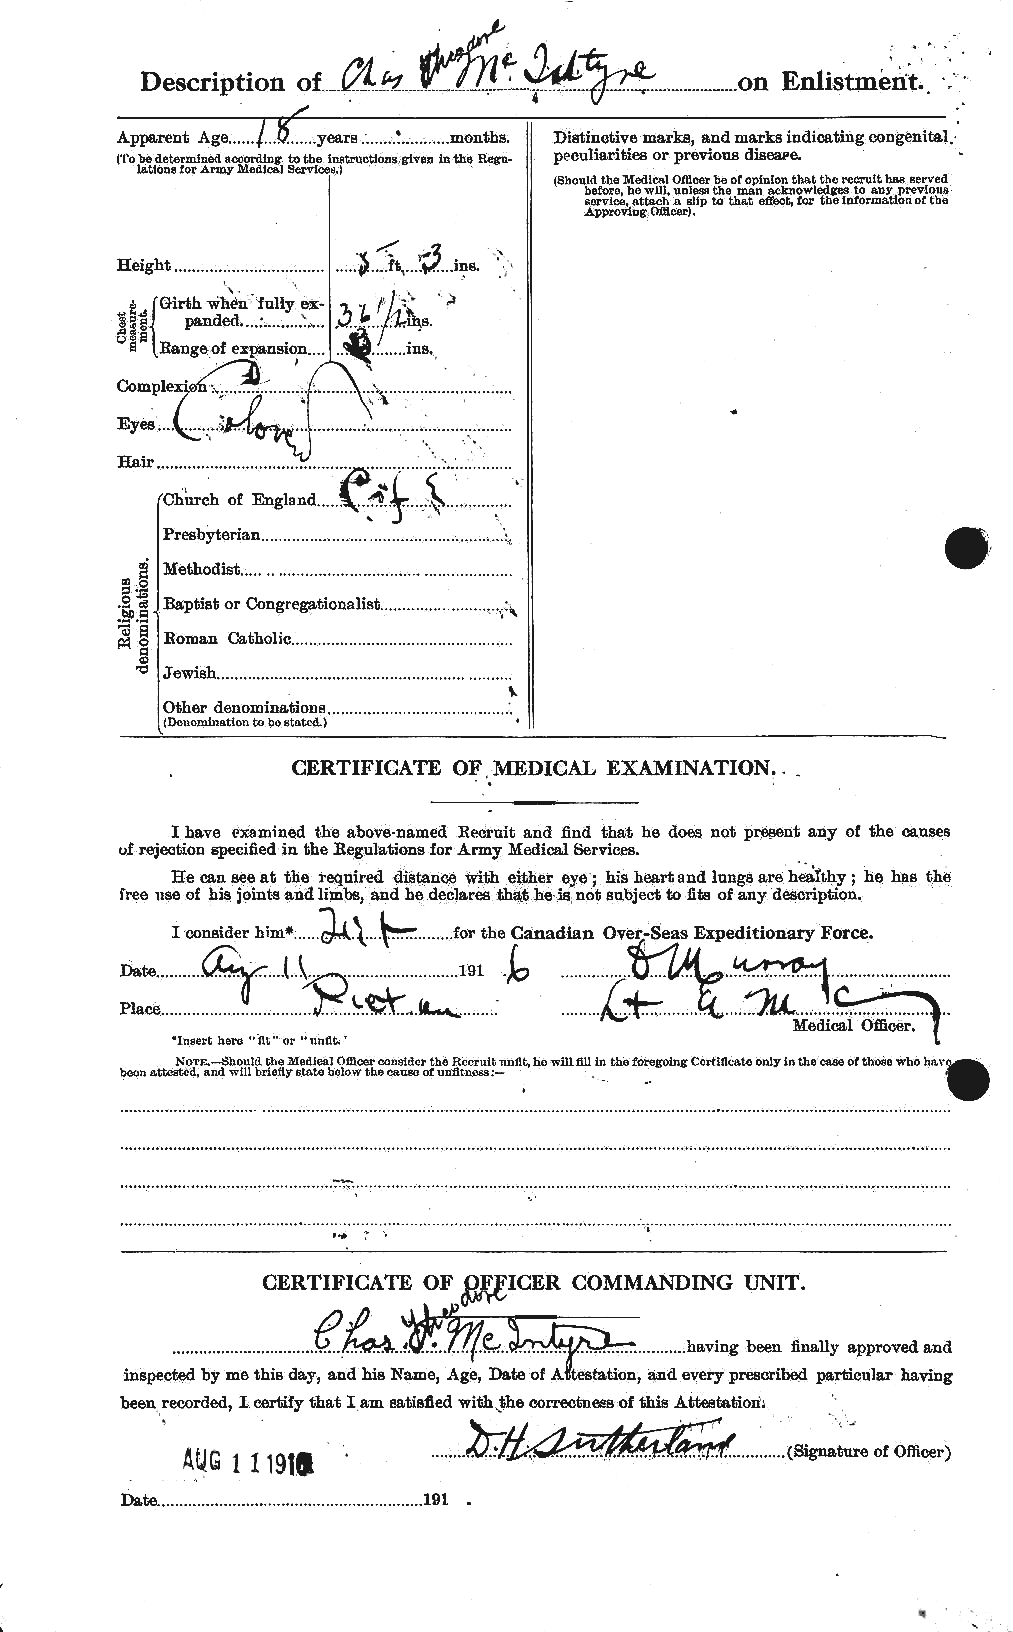 Dossiers du Personnel de la Première Guerre mondiale - CEC 527277b